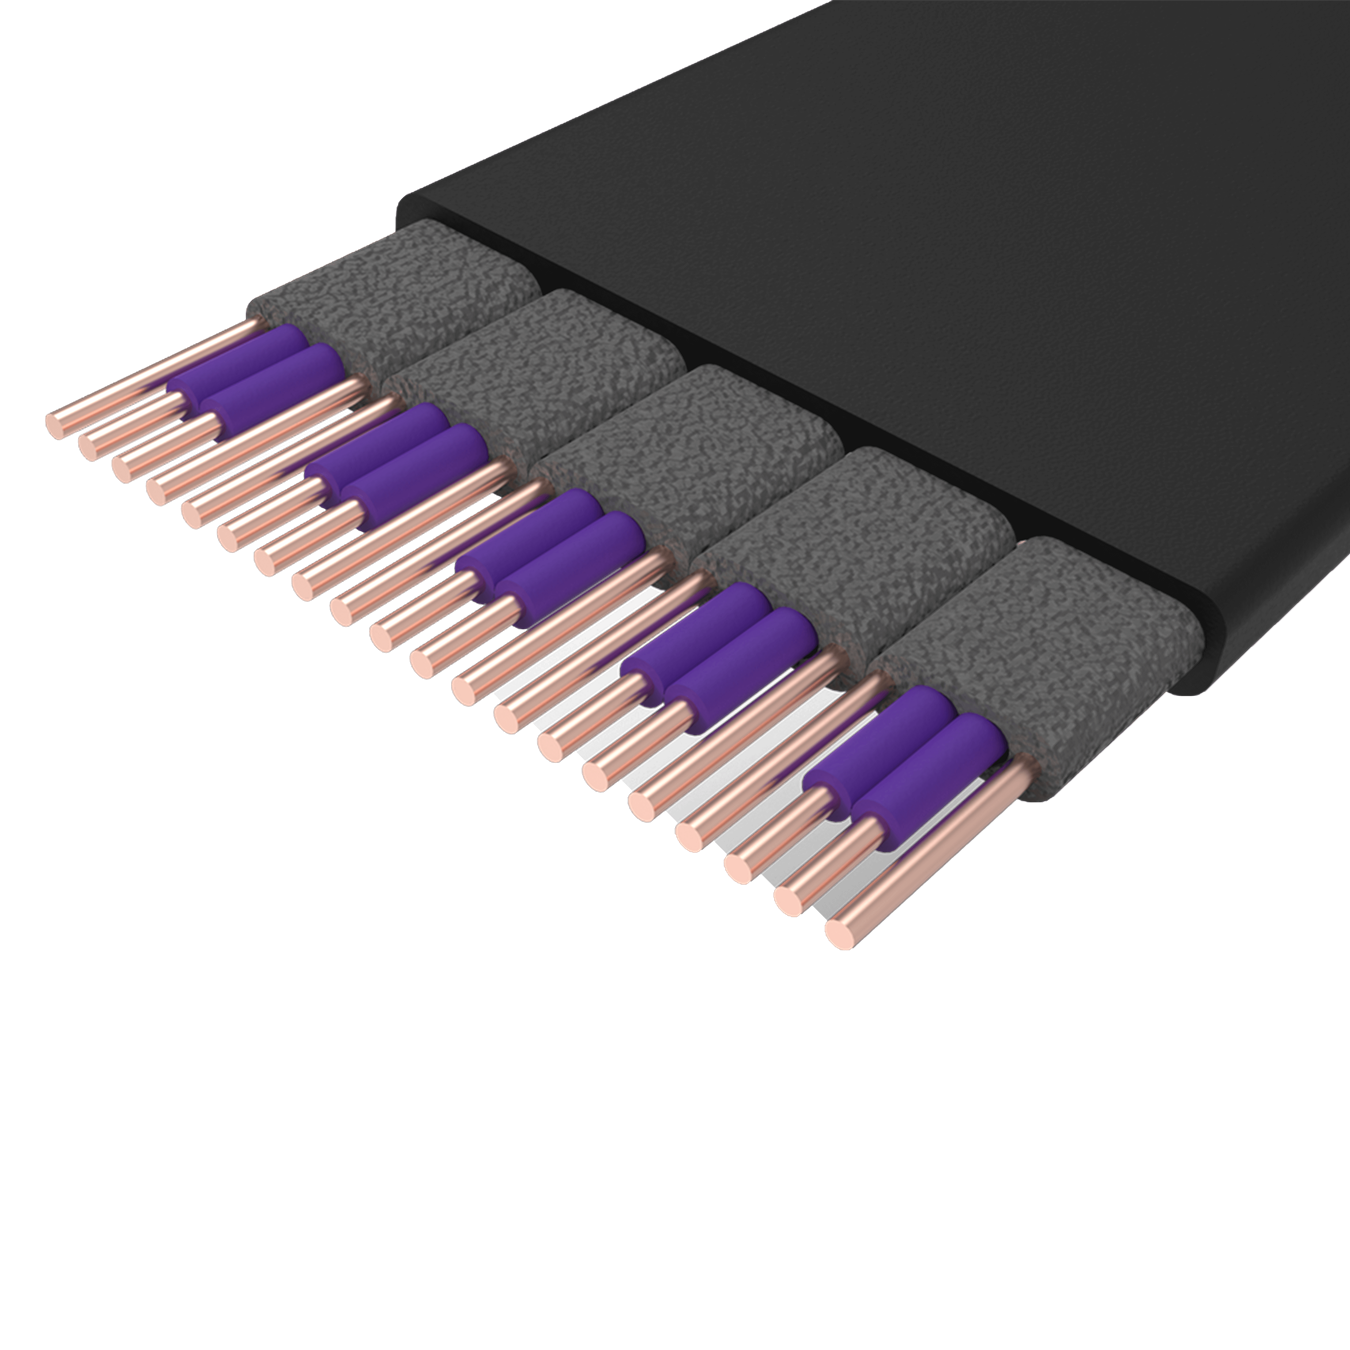 Cable elevador Cooler Master - PCIe 4.0 x16 - 300 mm - Negro/Púrpura